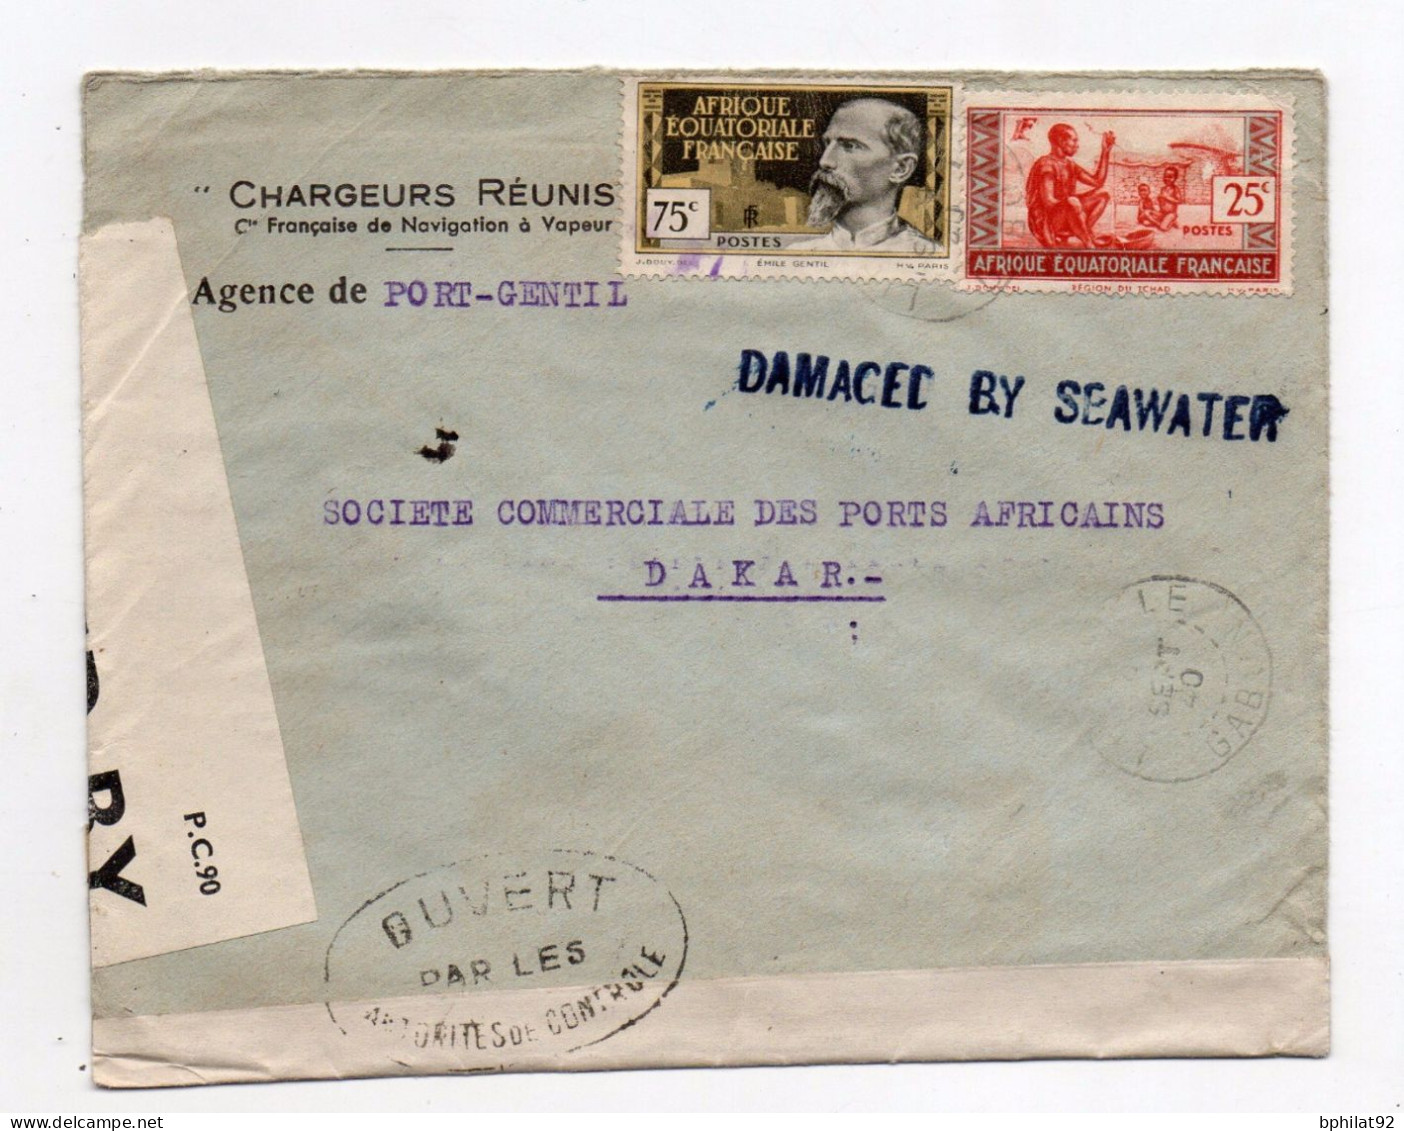 !!! LETTRE DE PORT GENTIL DE SEPTEMBRE 1940 POUR DAKAR, MARQUE LINEAIRE BLEUE "DAMAGED BY SEAWATER" - Lettere Accidentate